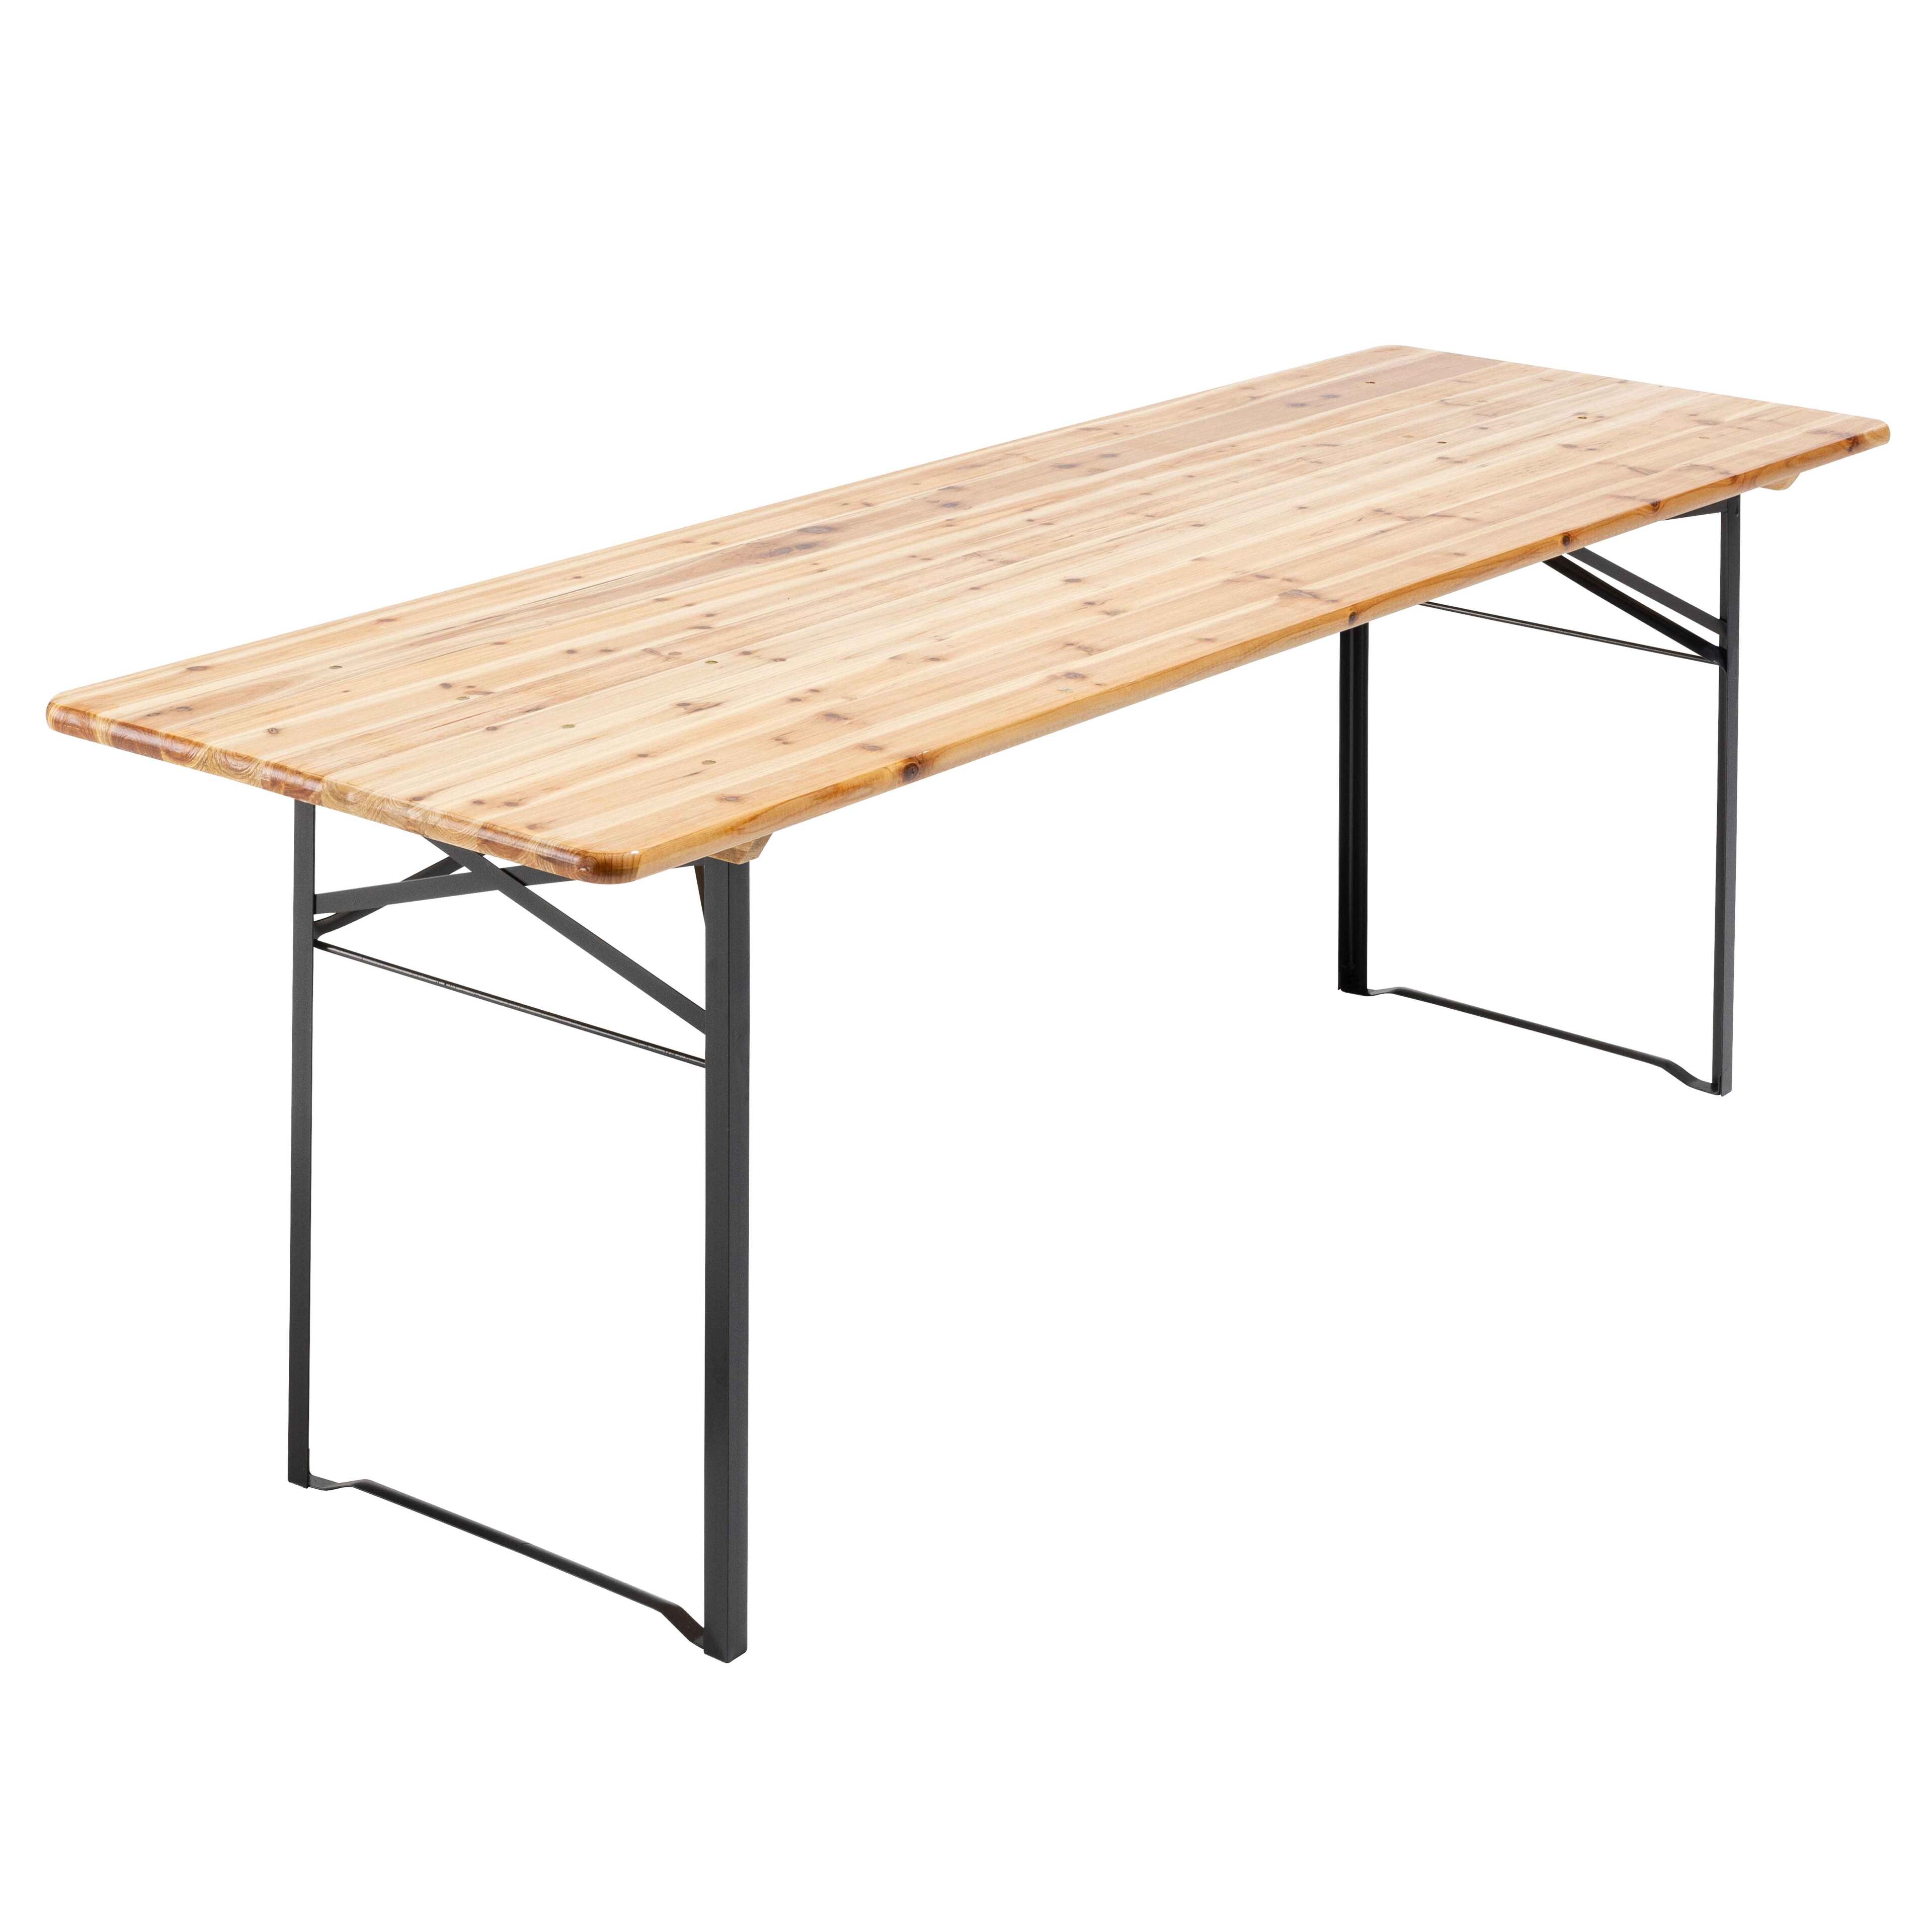 Table pliante brasserie rectangle 220 cm X 70 cm + 2 bancs 220 cm